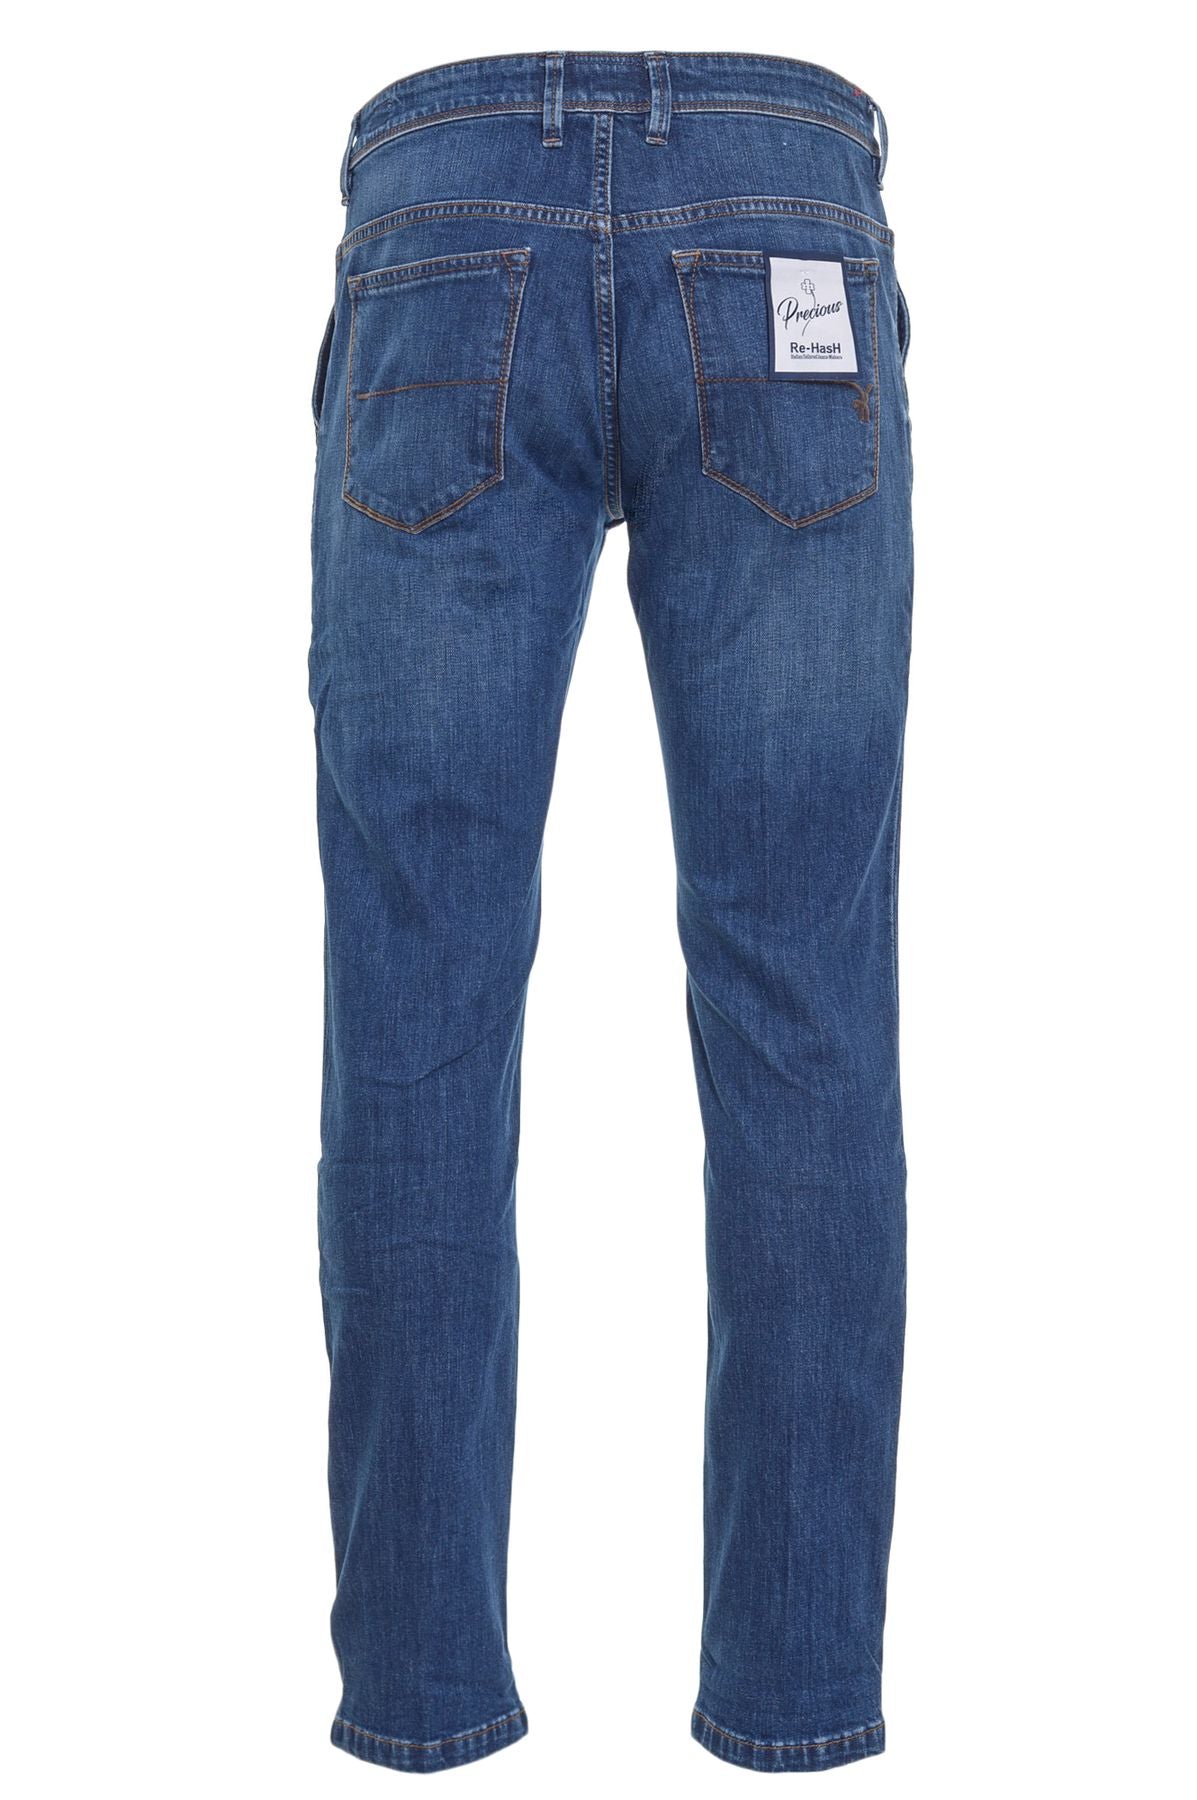 Re-HasH Jeans Autunno/Inverno p3212546mariotto